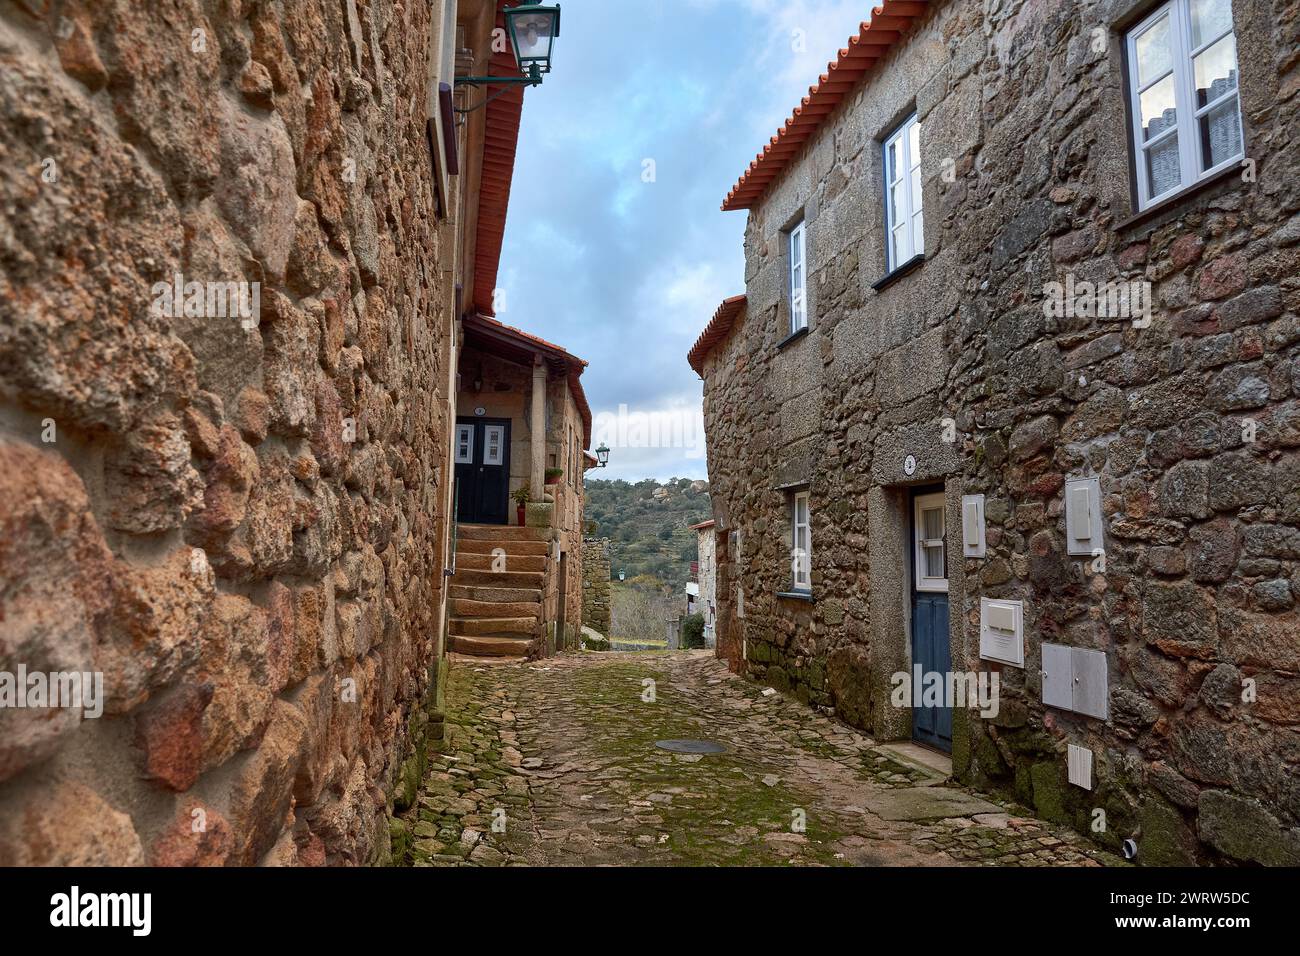 Ein malerischer Blick auf zwei enge Steinstraßen in einem alten europäischen Dorf mit Treppen, die zu einer Tür führen Stockfoto